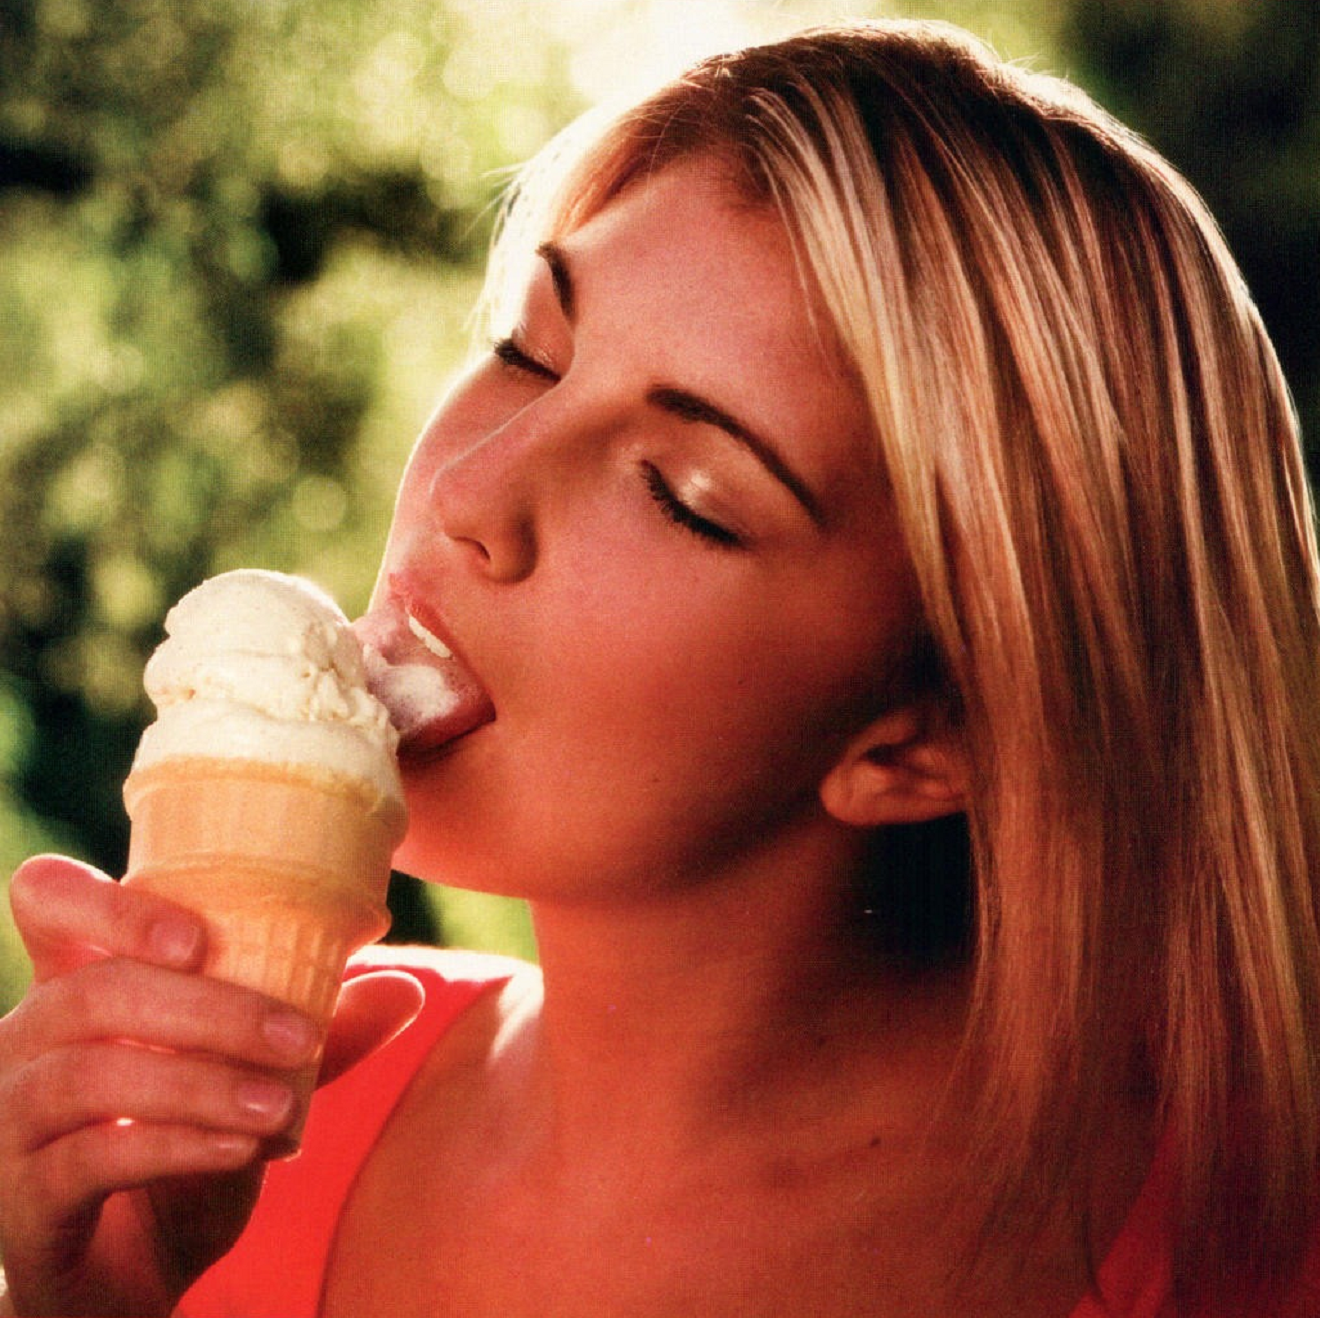 Облизывает мороженое. Девушка ест мороженое. Девушка лижет мороженое. Девушка кушает мороженое. Где сасут